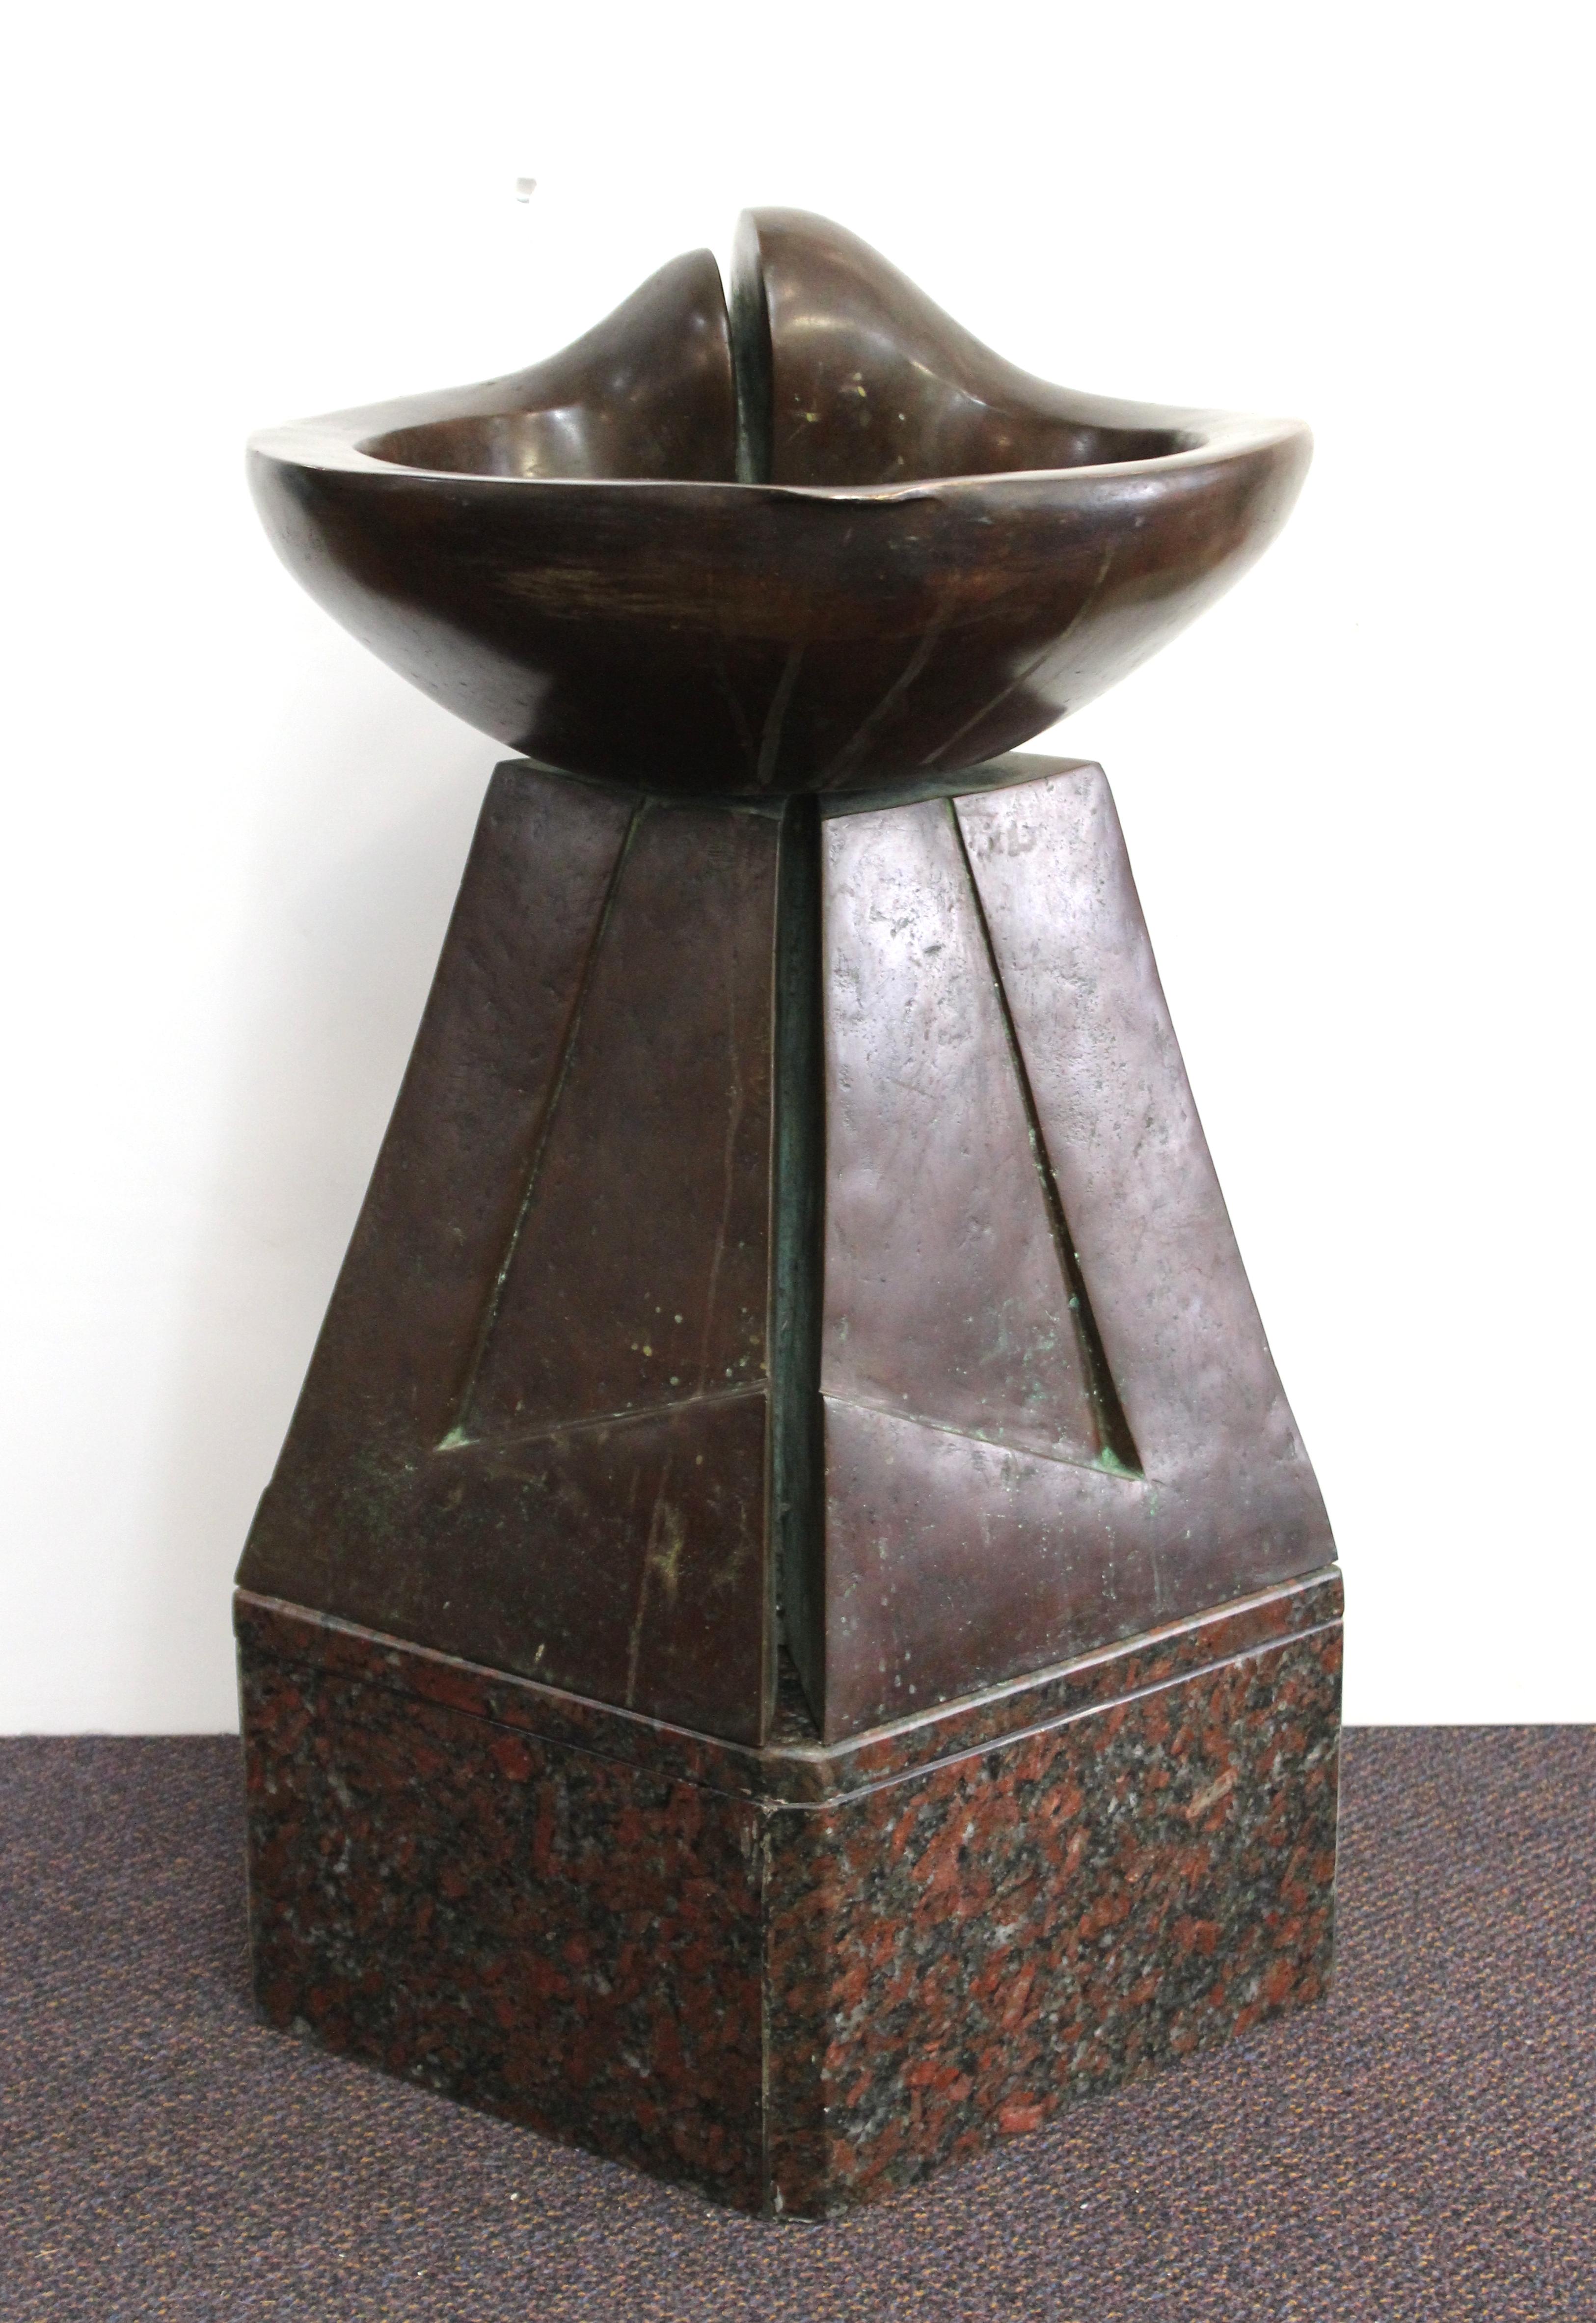 Moderner abstrakter Bronzebrunnen von L. Filippi. Das Stück besteht aus einer organisch geformten Schale auf einer eher geometrischen Basis, die auf einem Granitsockel steht. Auf einer Seite des Bronzesockels vom Künstler L. Filippi signiert, auf